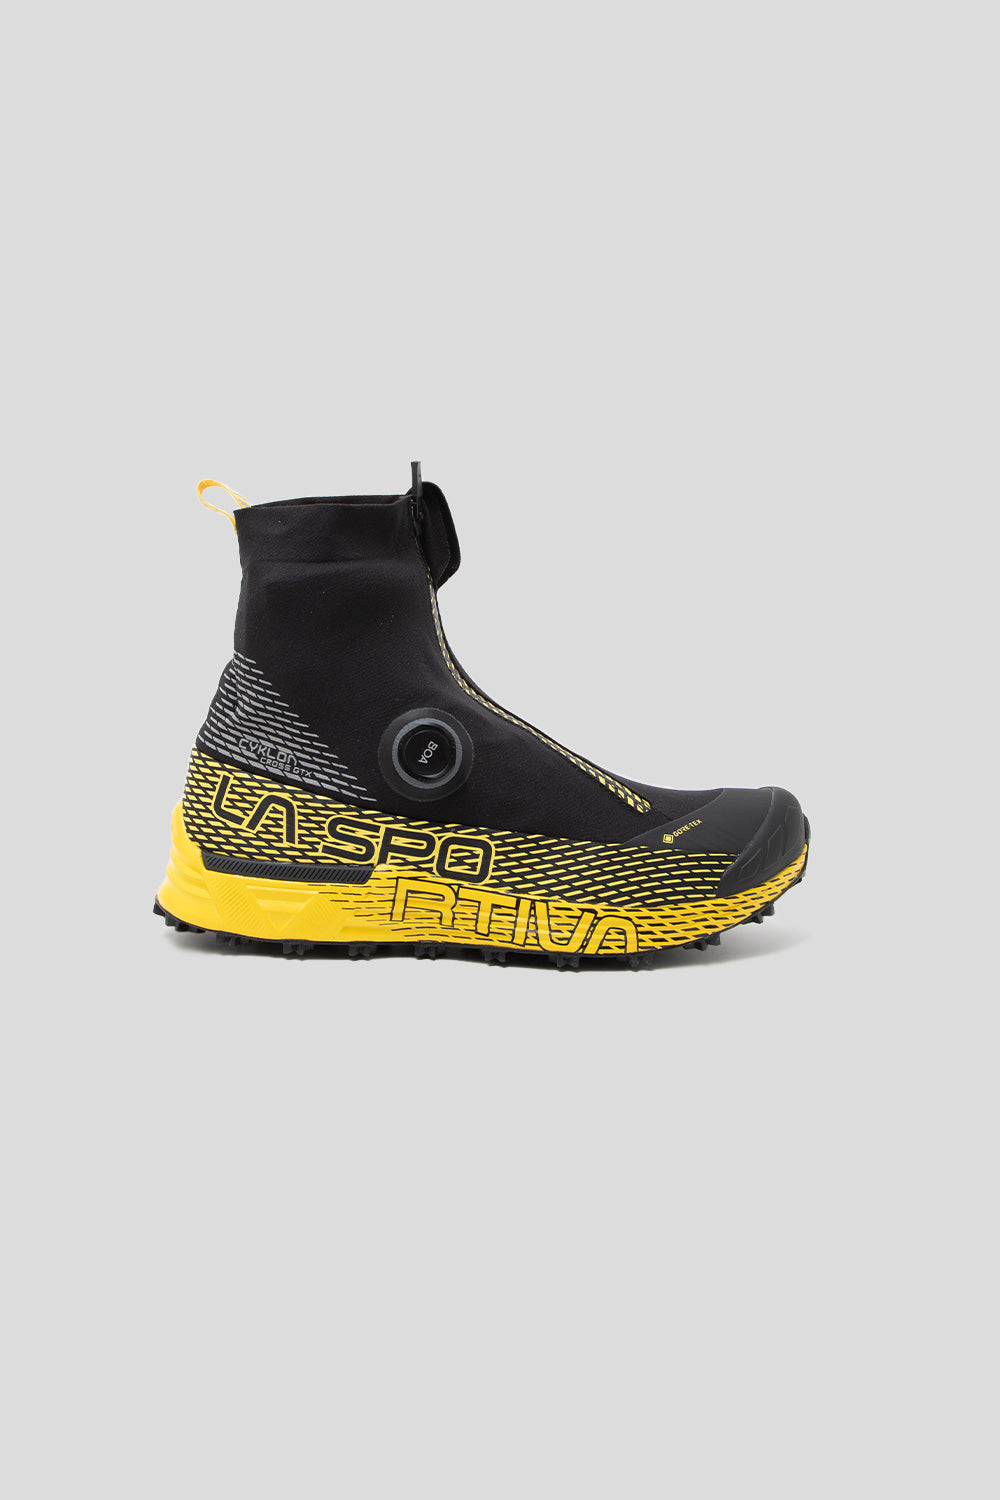 La Sportiva Cyklon Cross GTX Shoe in Black / Yellow